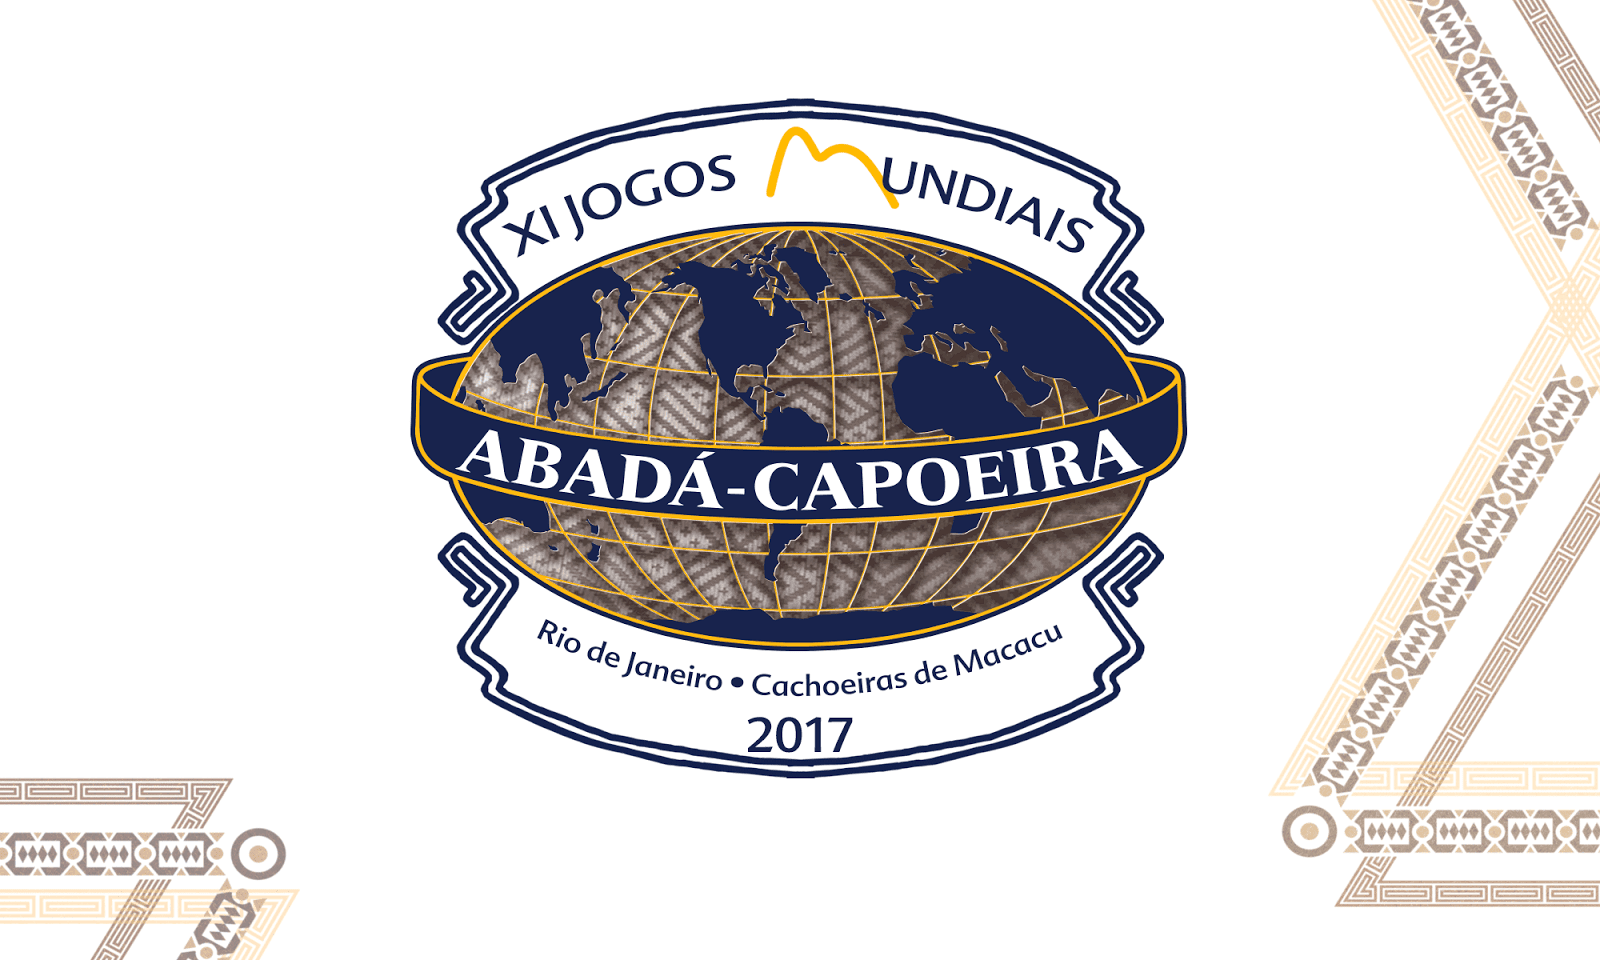 2021 ABADÁ-CAPOEIRA INTERNATIONAL FESTIVAL OF CAPOEIRA & JOGOS